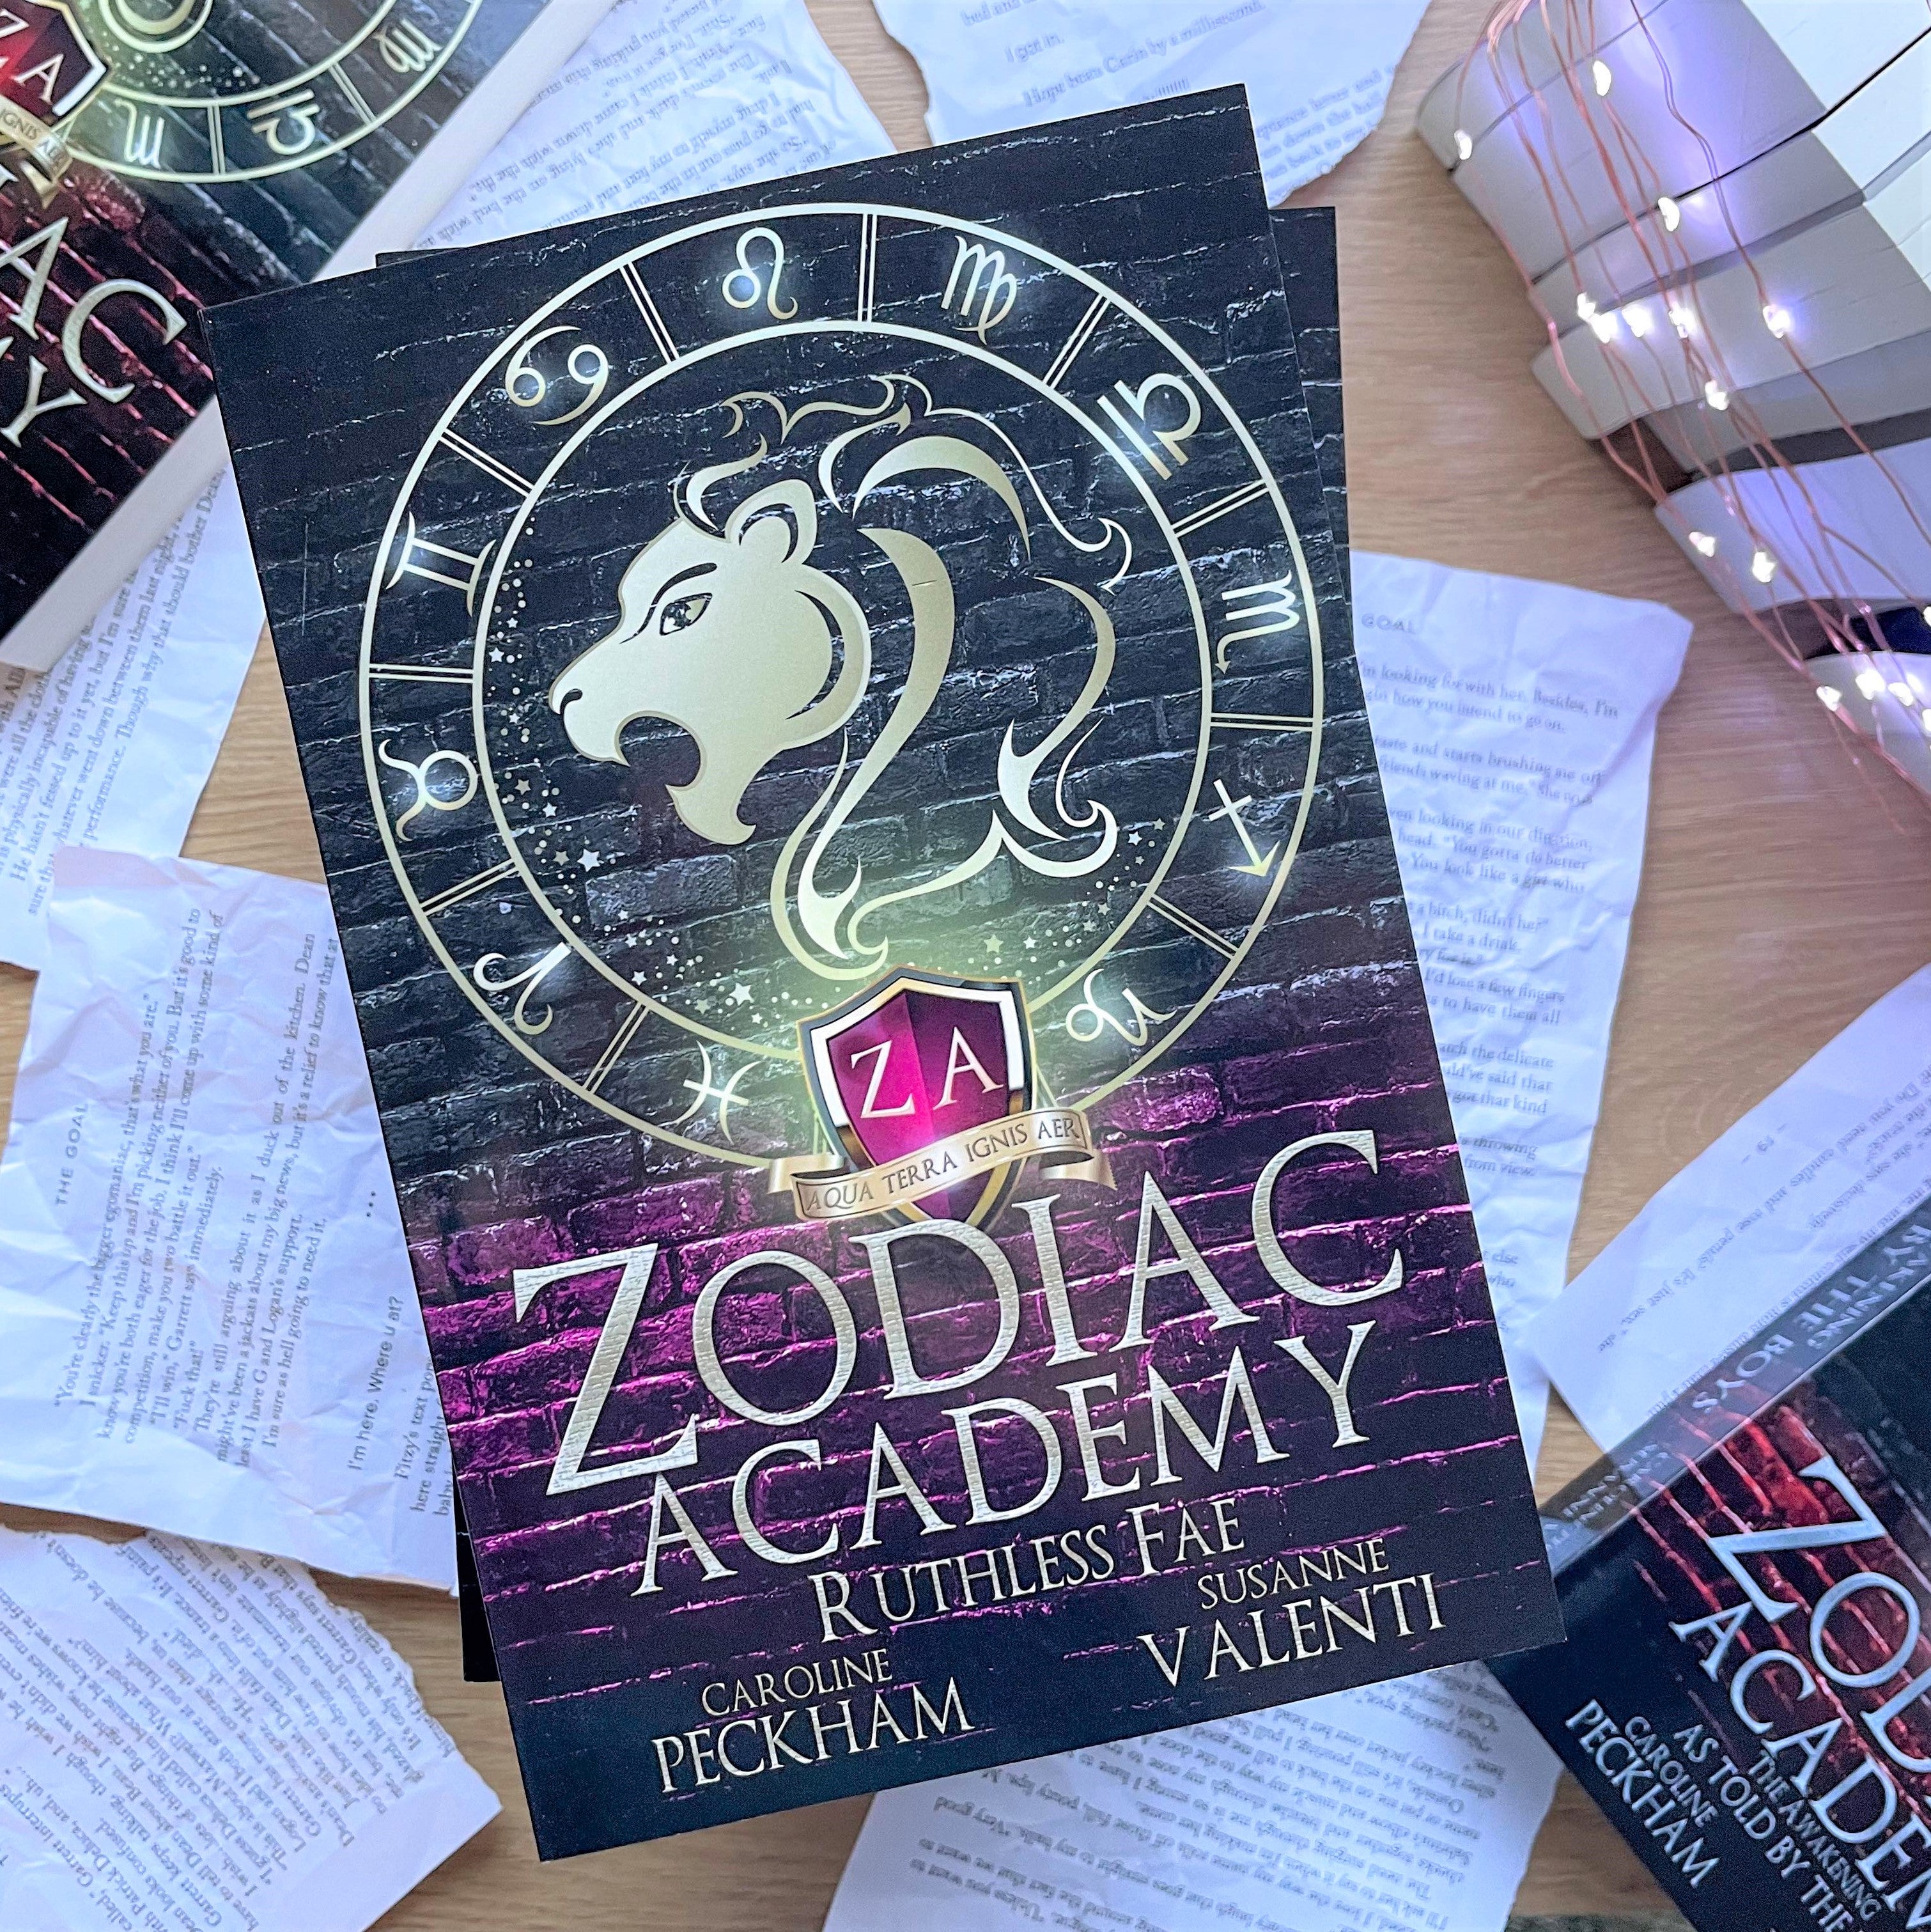 Zodiac Academy by Caroline Peckham & Susanne Valenti